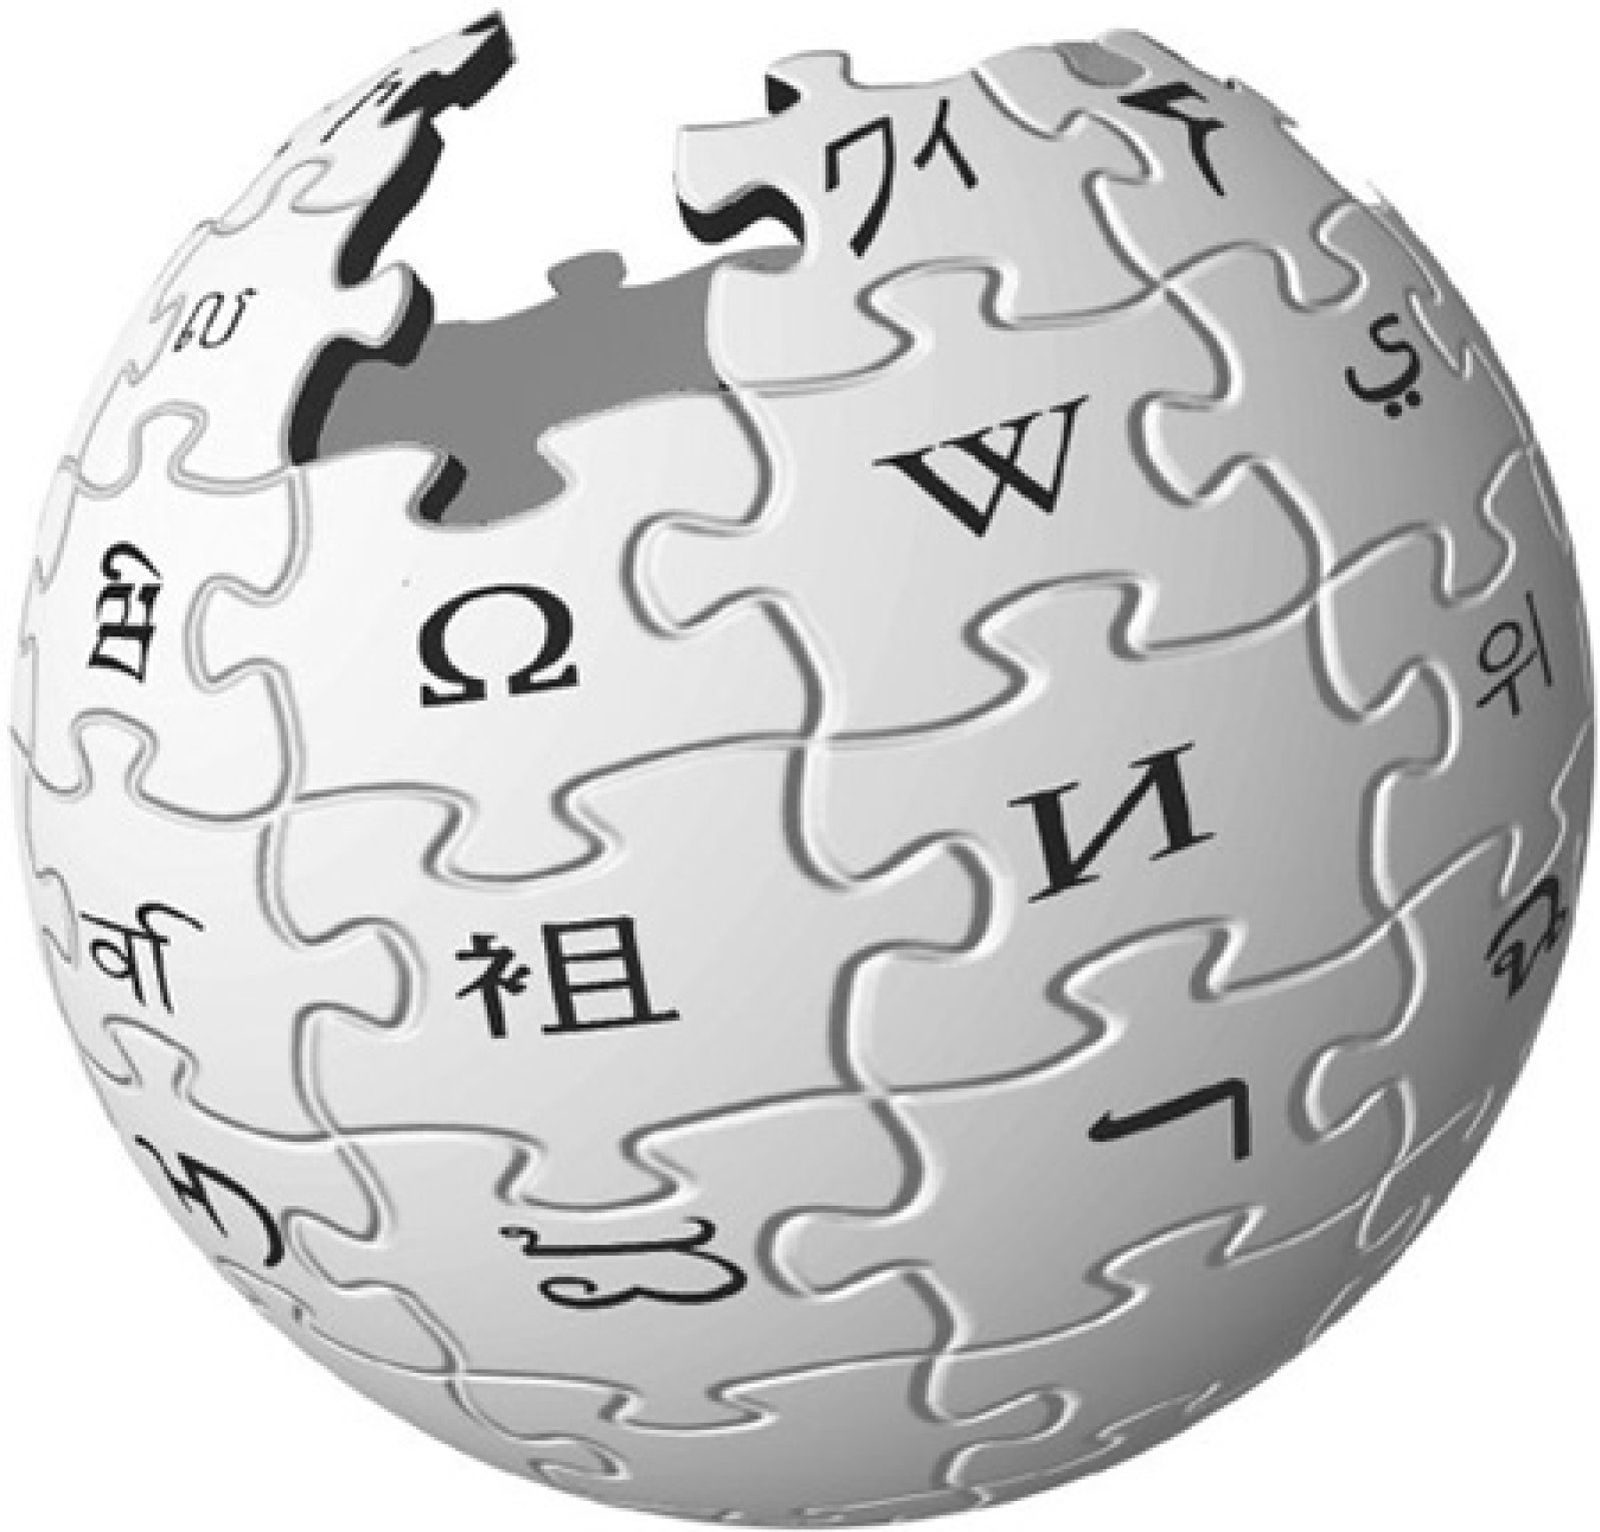 Foto: Wikipedia ¿la gran estafa de Internet?